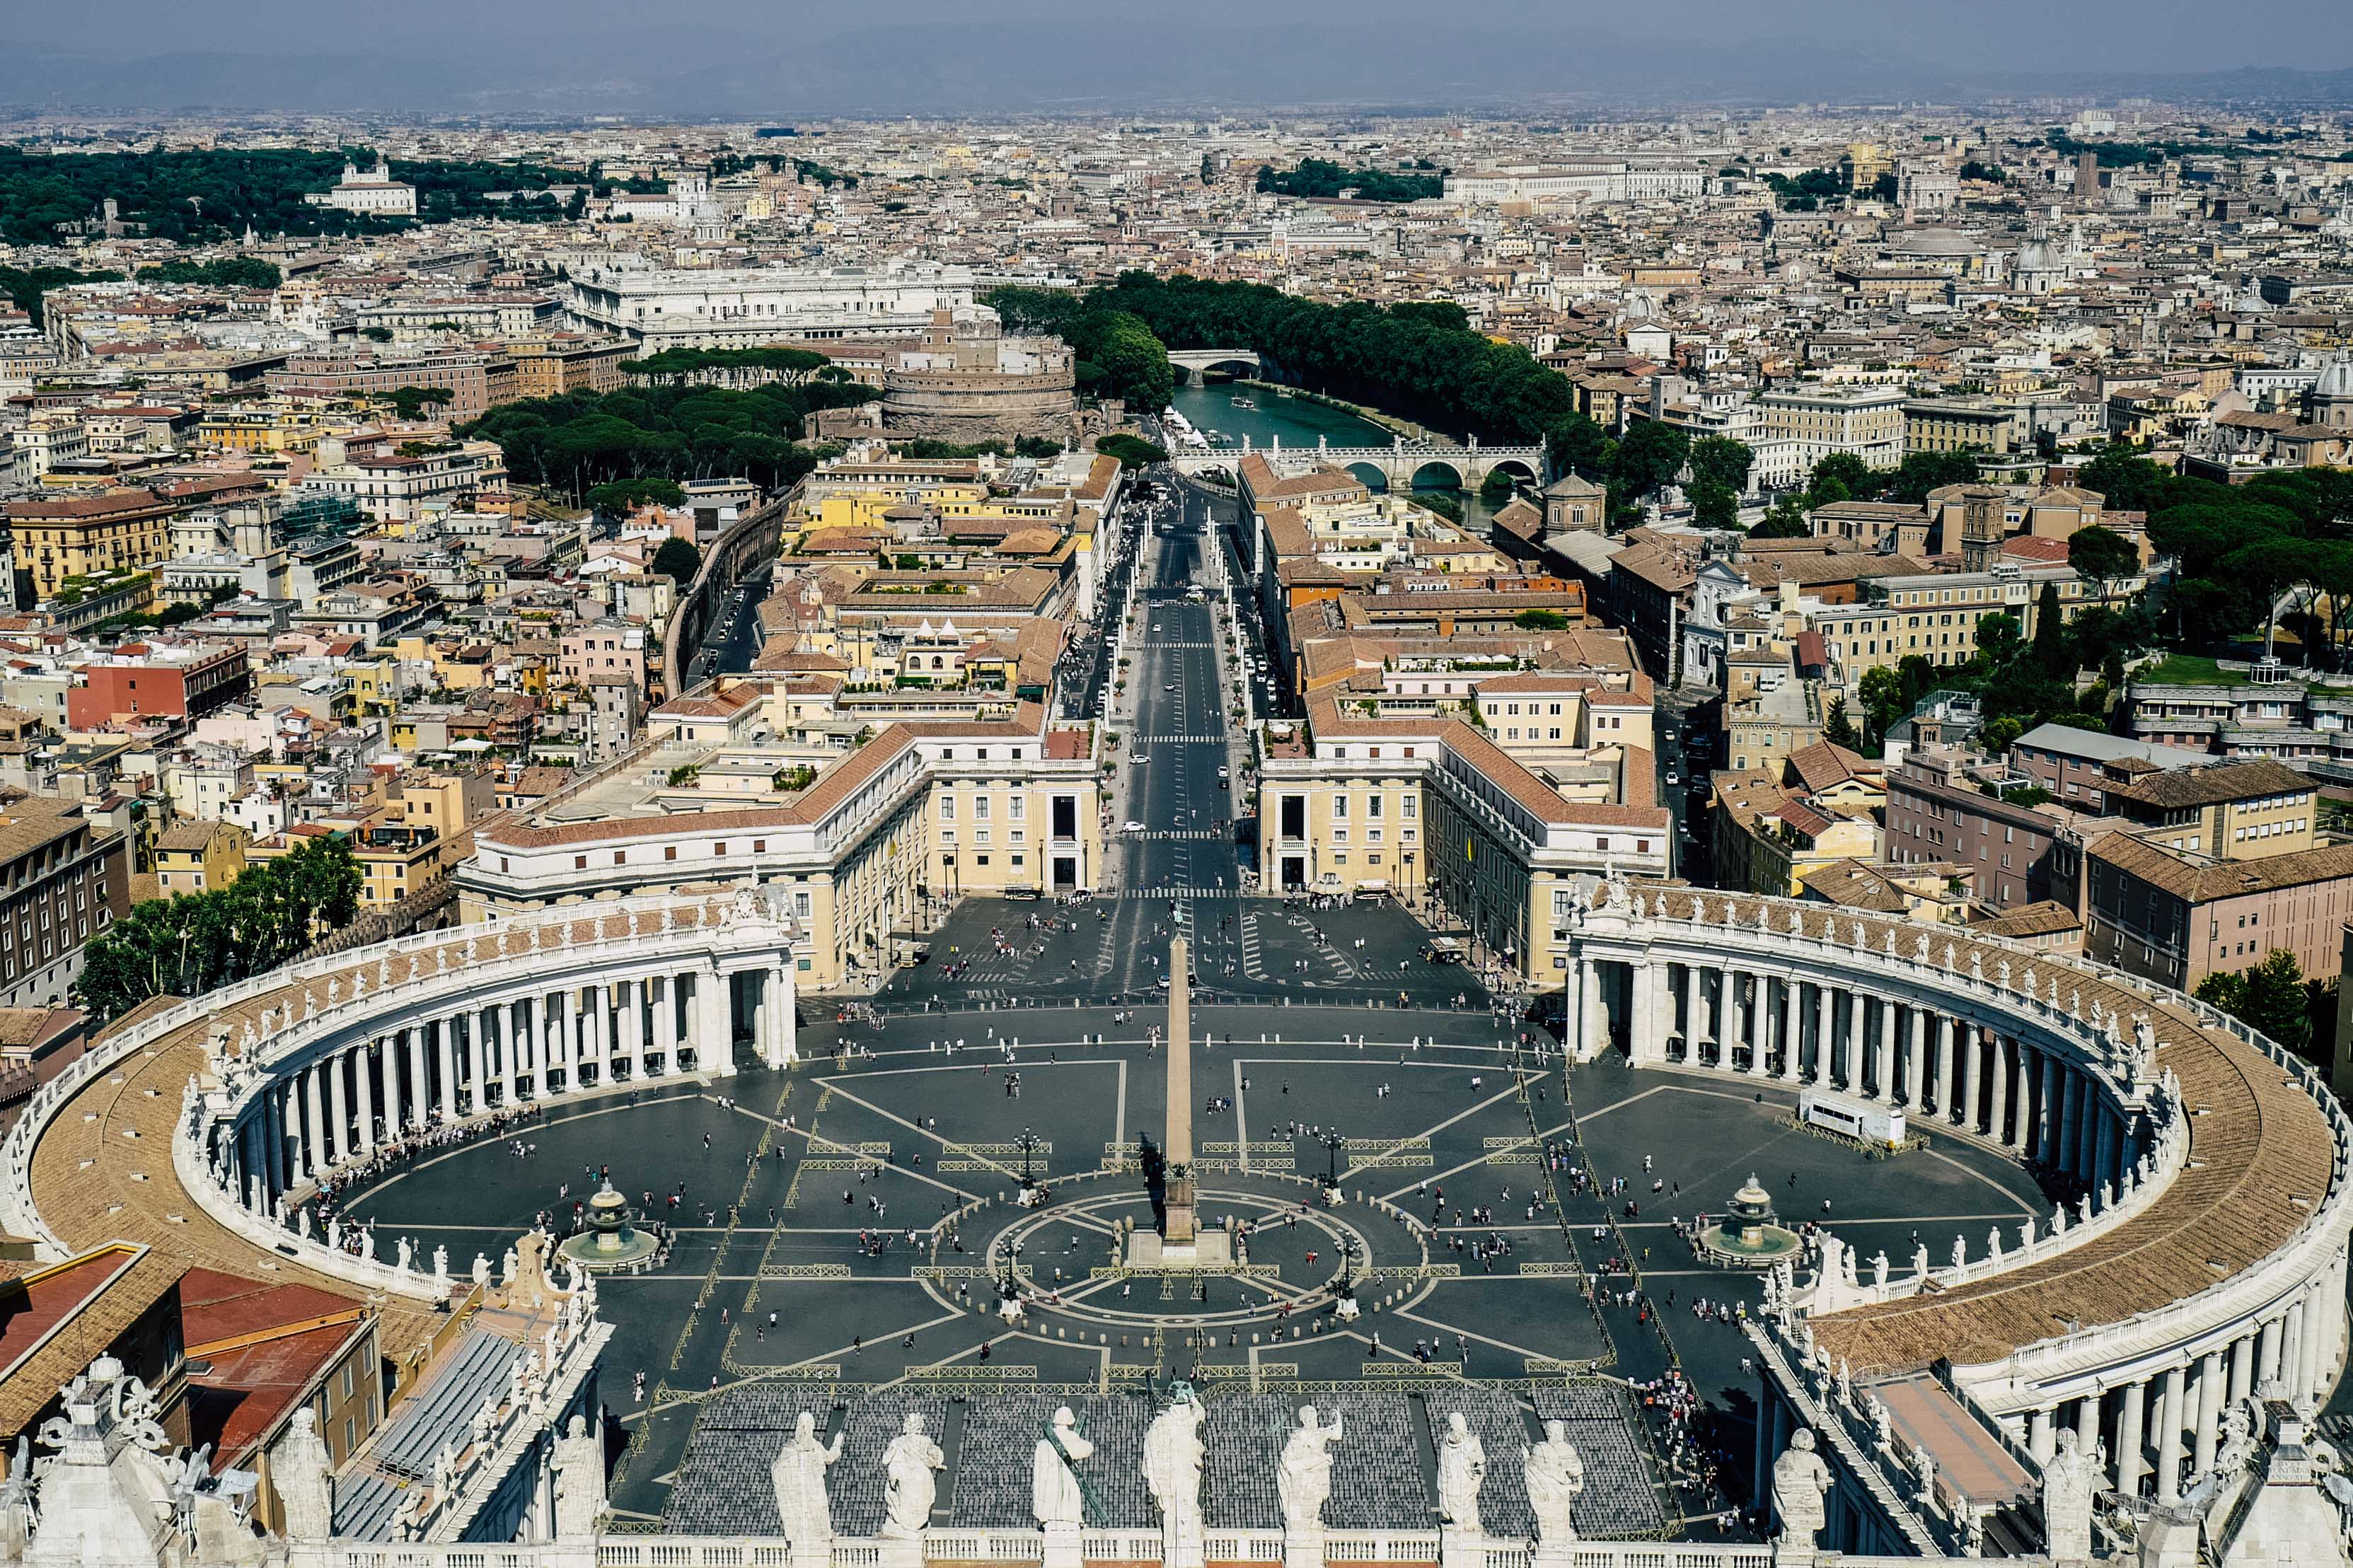 Eine Aufnahme vom Dach des Petersdoms. Zu sehen ist der Petersplatz und dahinter noch ein Teil von Rom